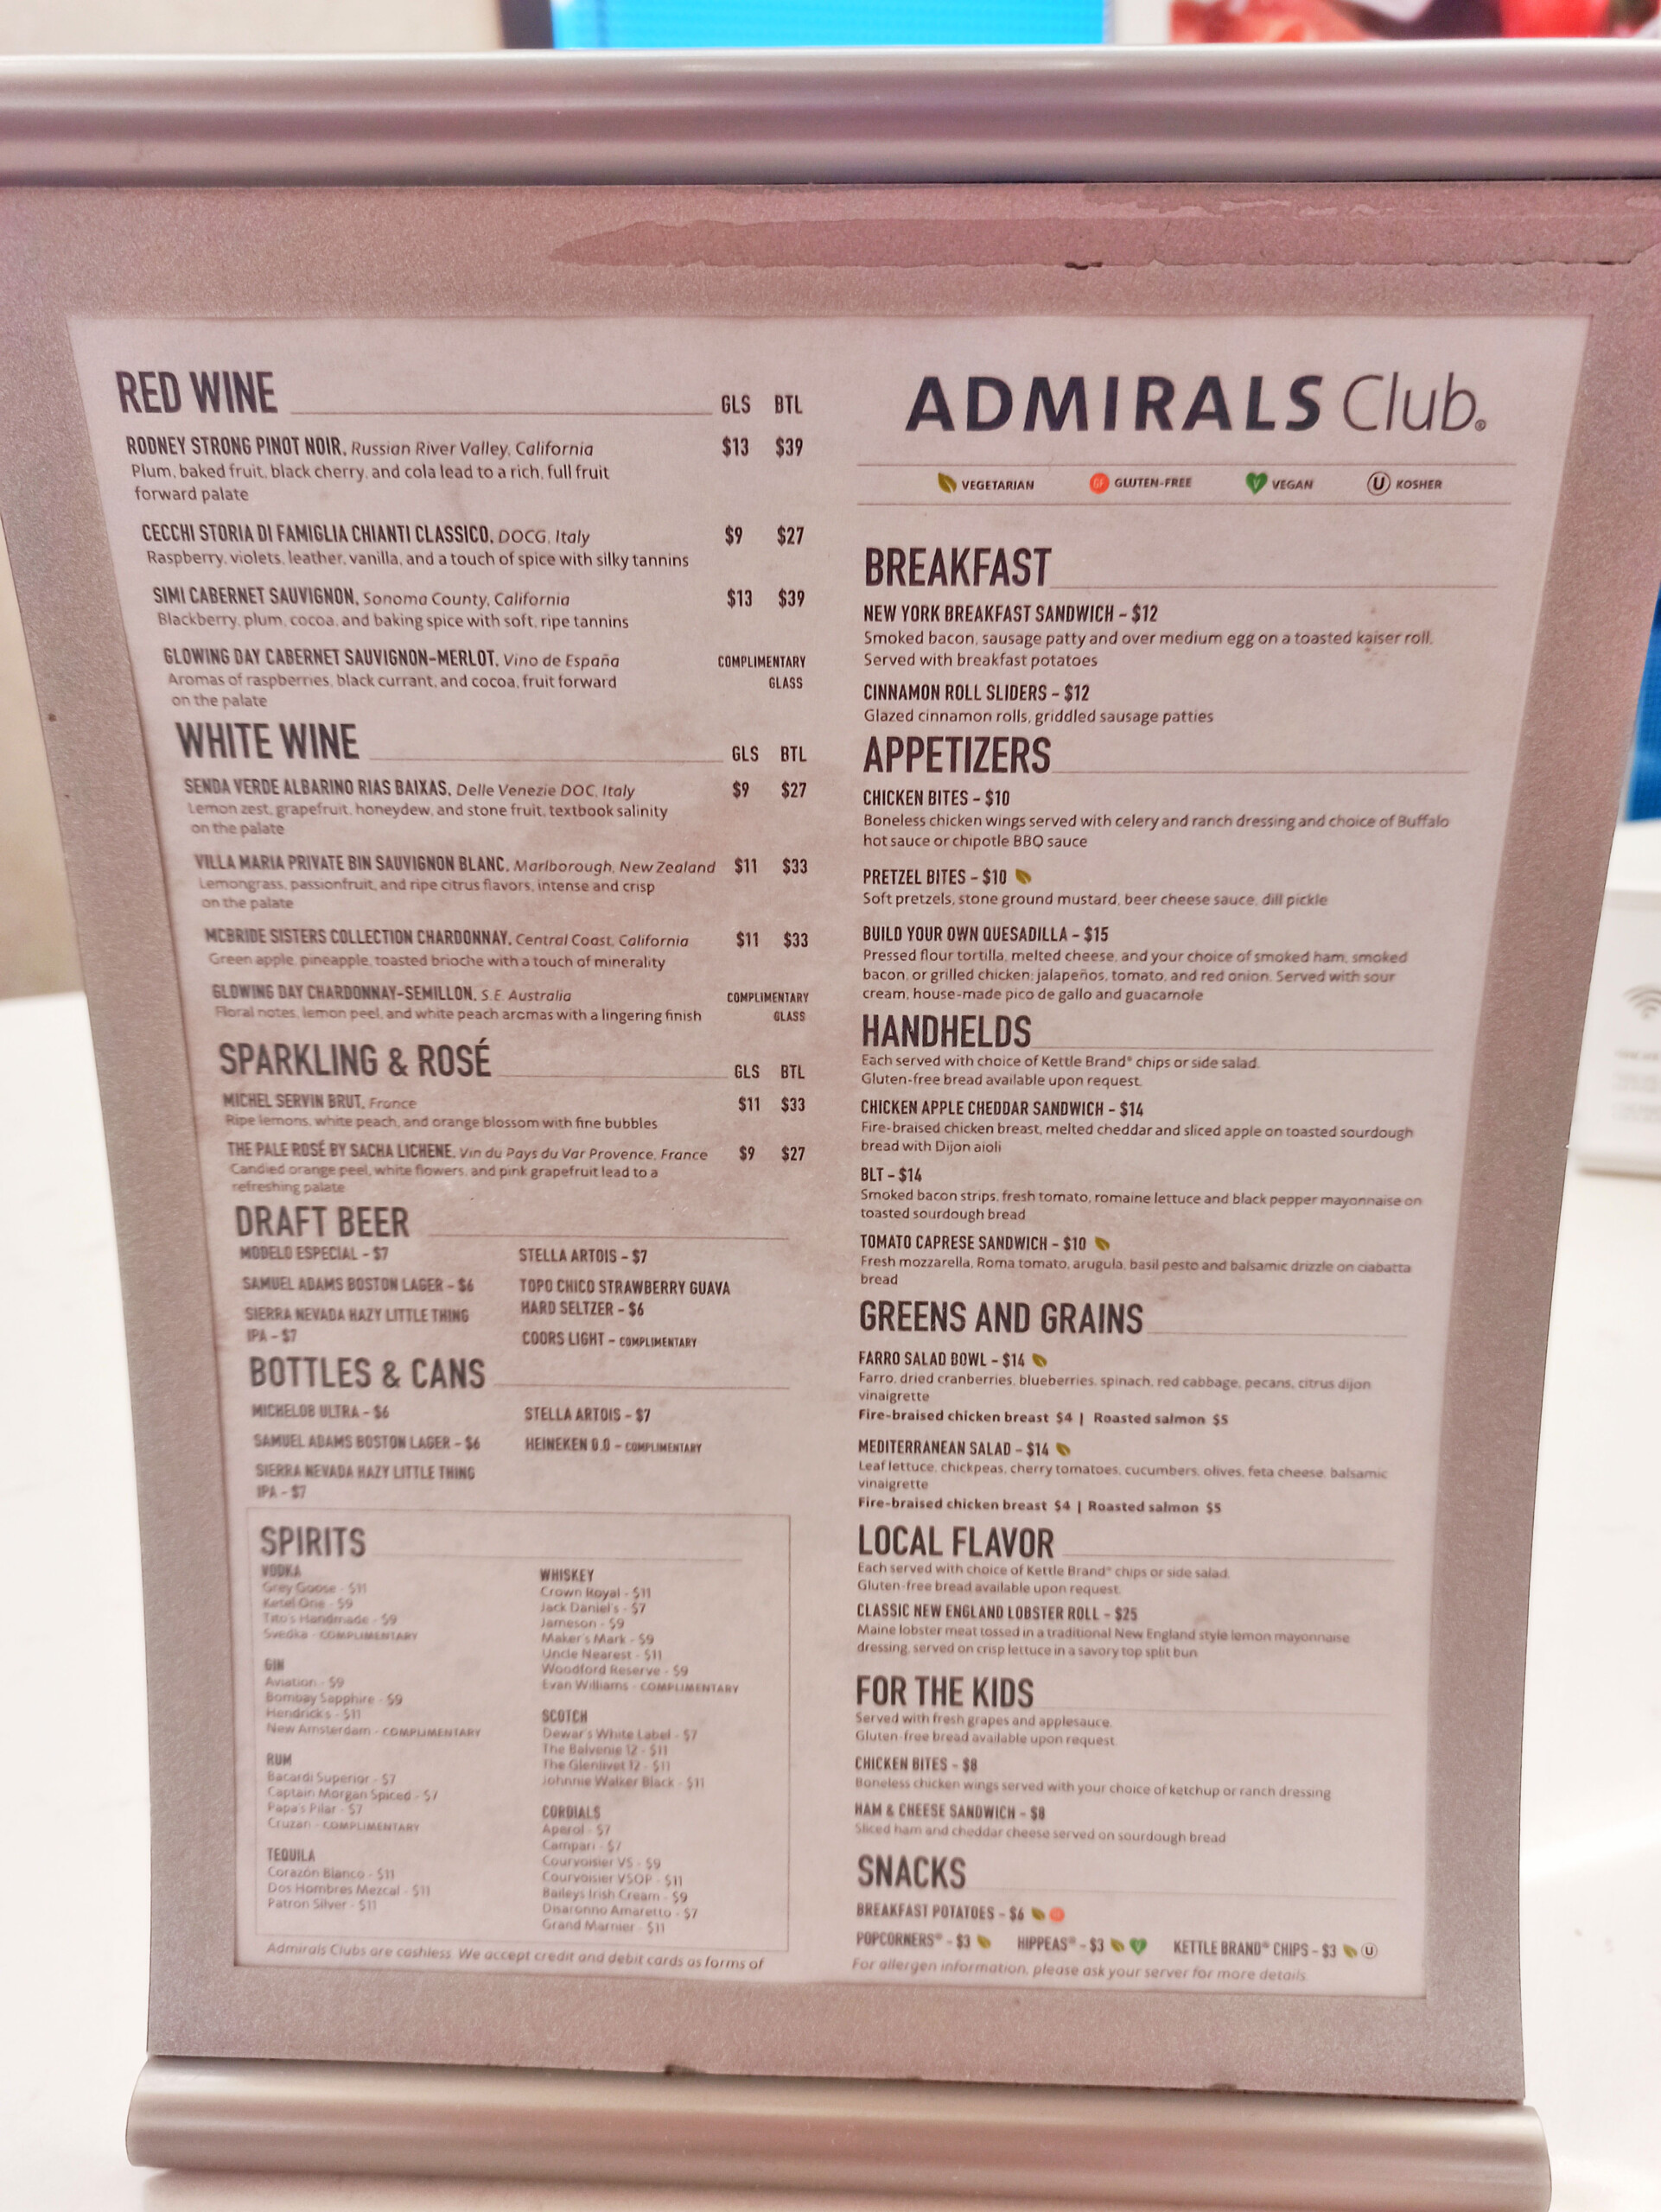 Boston Admirals Club Menu